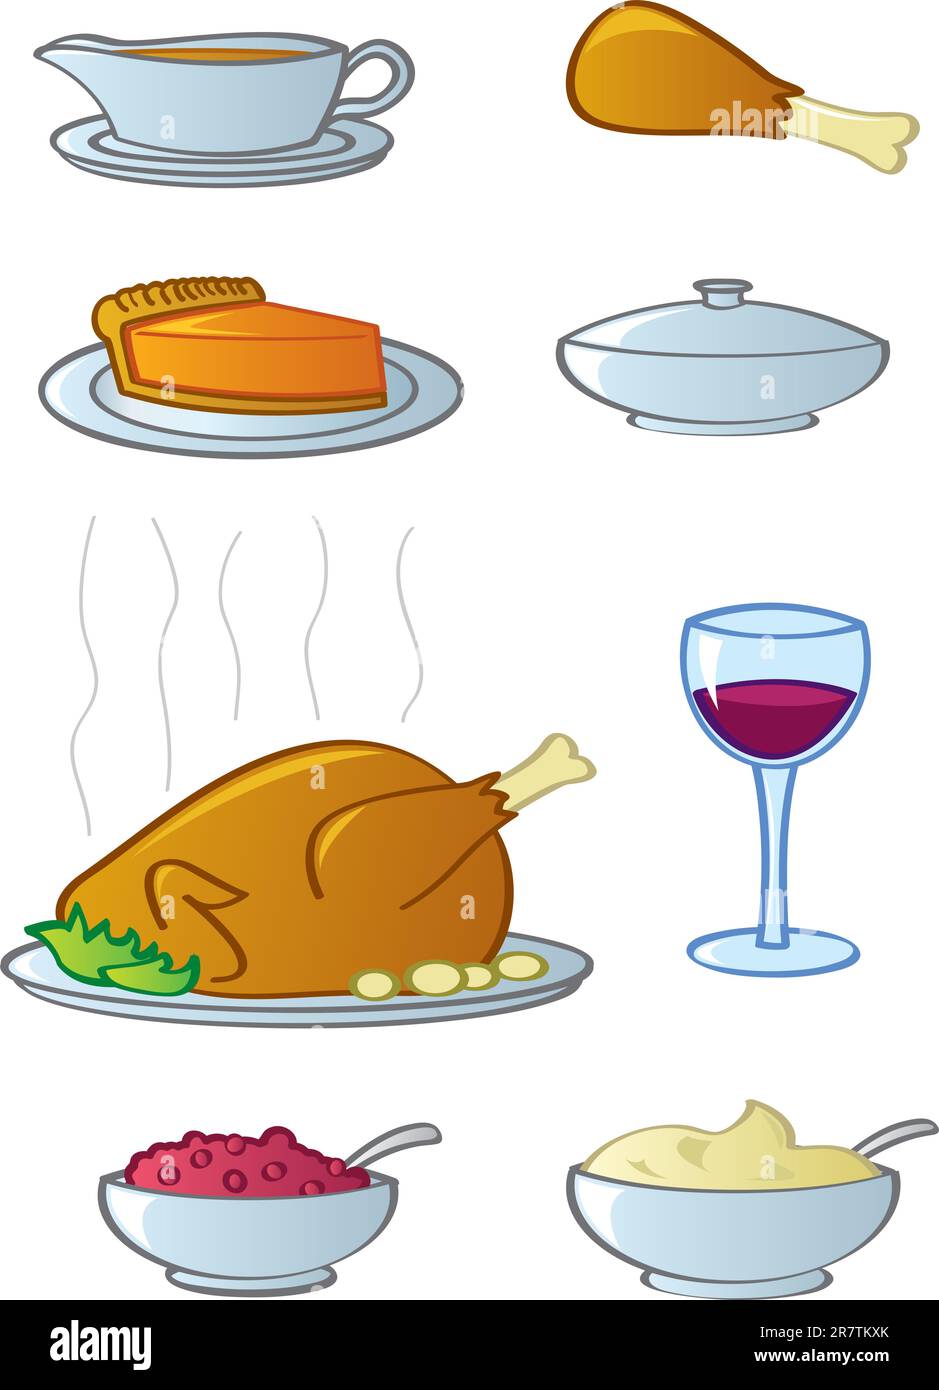 Beim typischen amerikanischen Thanksgiving- oder Weihnachtsessen gab es übliche Speisen und Getränke. Stock Vektor